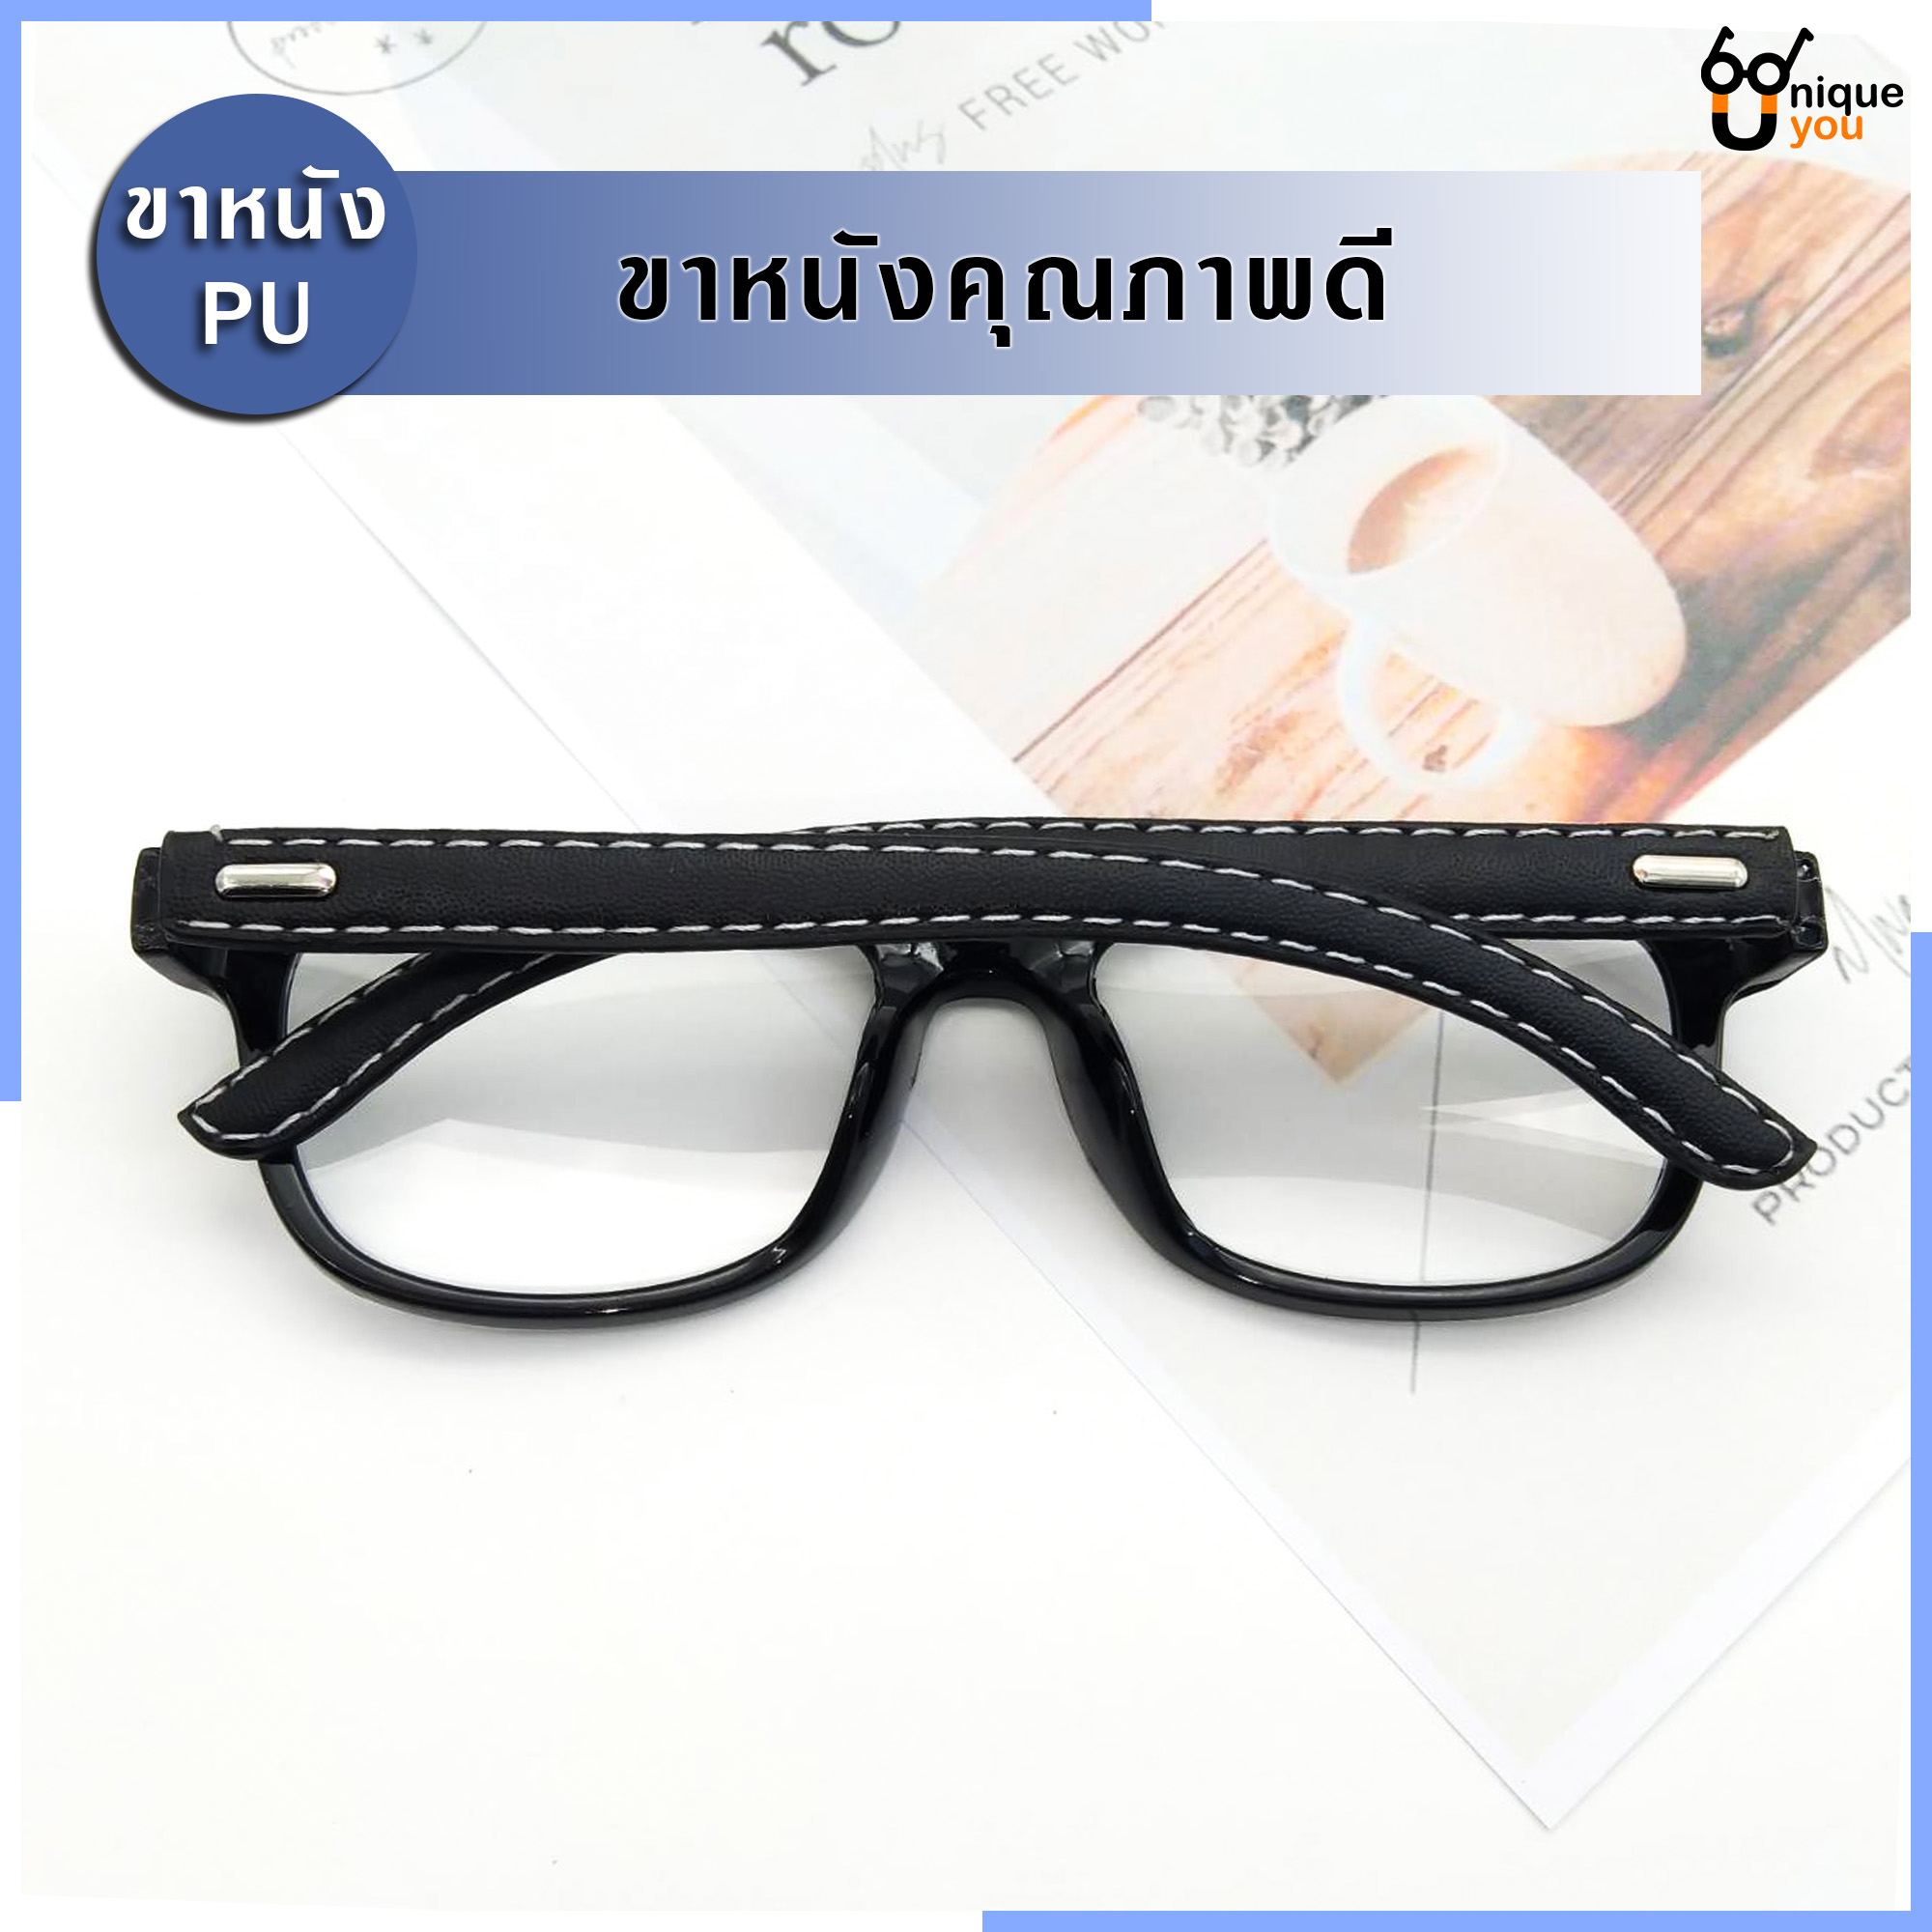 คำอธิบายเพิ่มเติมเกี่ยวกับ Uniq แว่นสายตายาว แว่นสายตาสั้น ขาหนังPU กรอบแว่นหนังPU แว่นสายตา+กรอบแว่นตา แว่นสายตายาว-สั้น